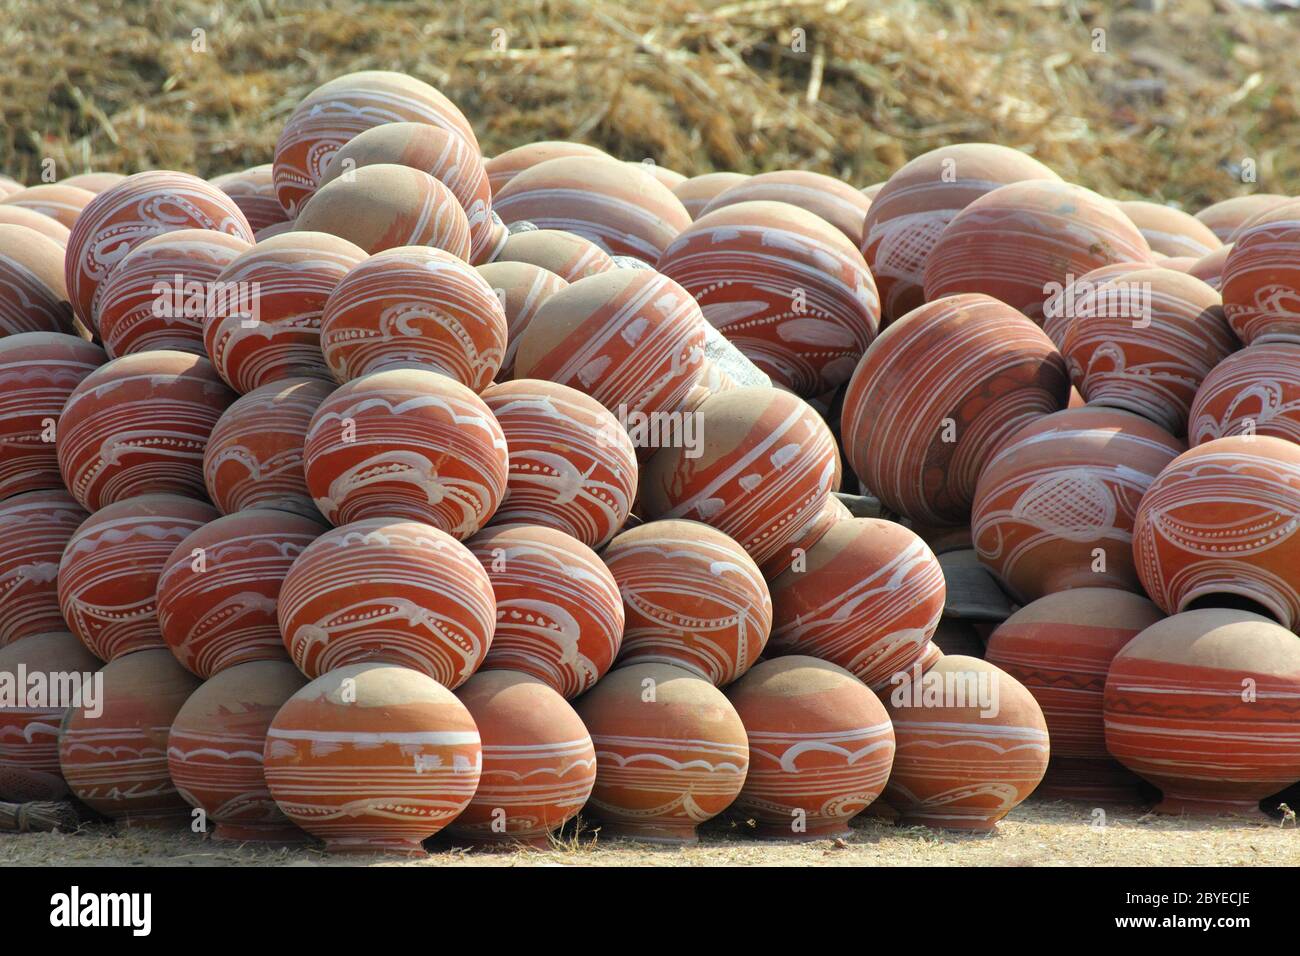 many clay pots in india Stock Photo